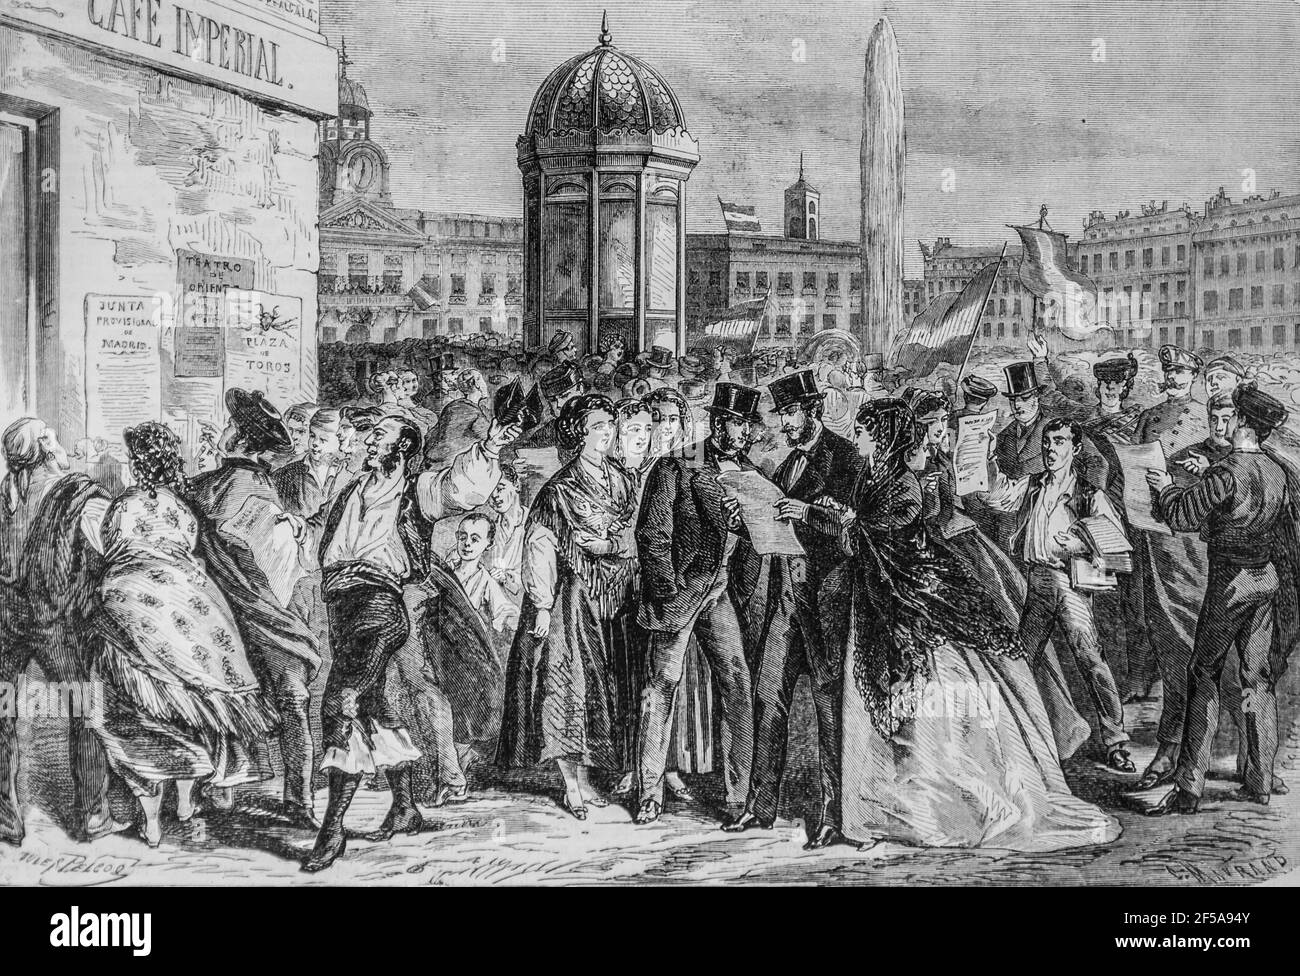 espagne lecture du manifeste de la junte a madrid ,l'univers illustre,editeur michel levy 1868 Stock Photo